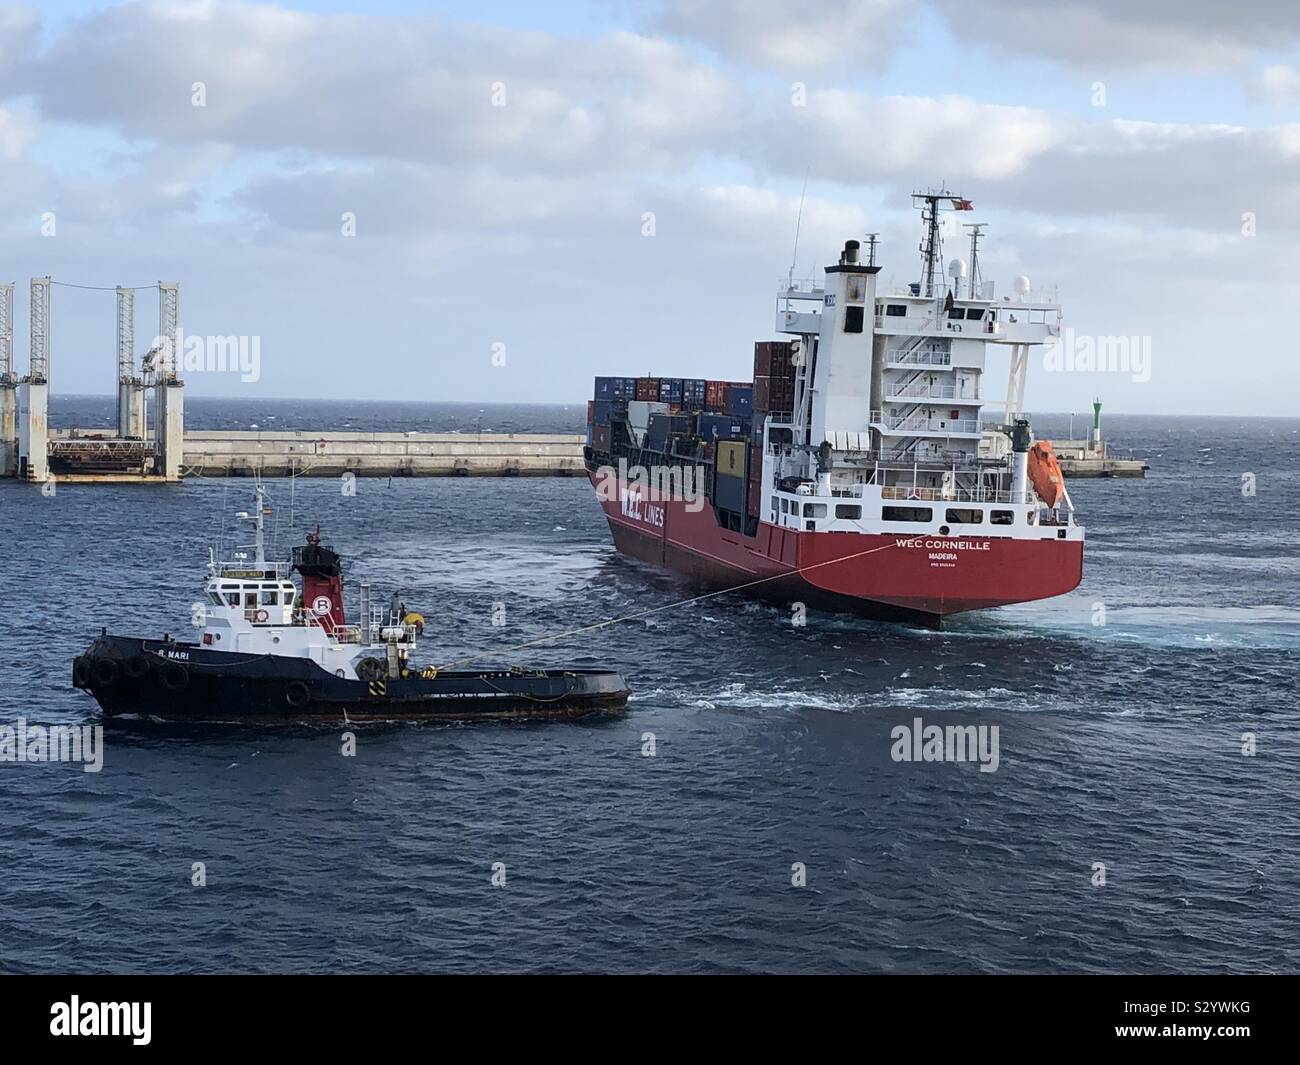 Arrecife/Lanzarote, 08.11.2019: Frachtschiff WEC Corneille der W.E.C. Linee beim Einlaufen Schlepper mit in den Hafen Arrecife Foto Stock